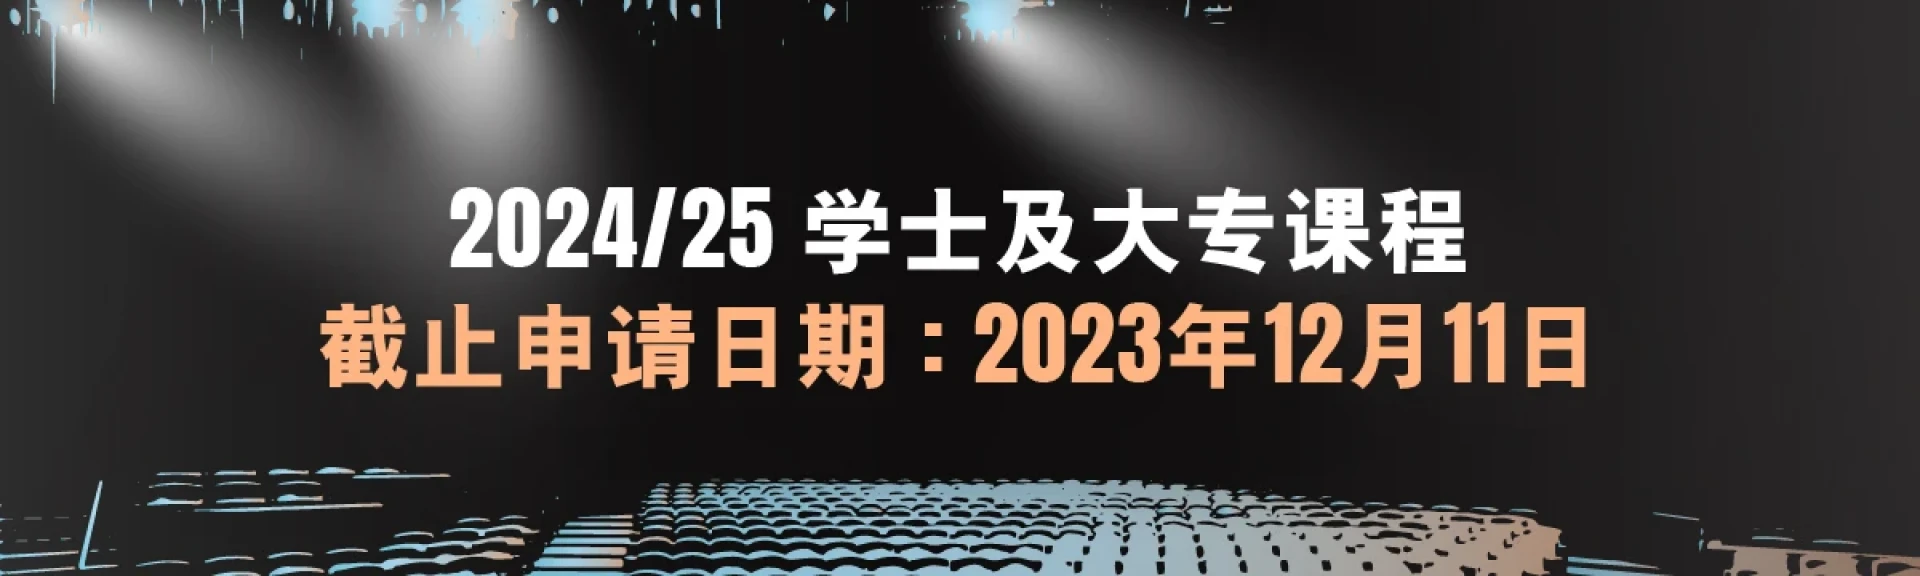 2024-25学士及大专课程将於2023年12月11日截止报名